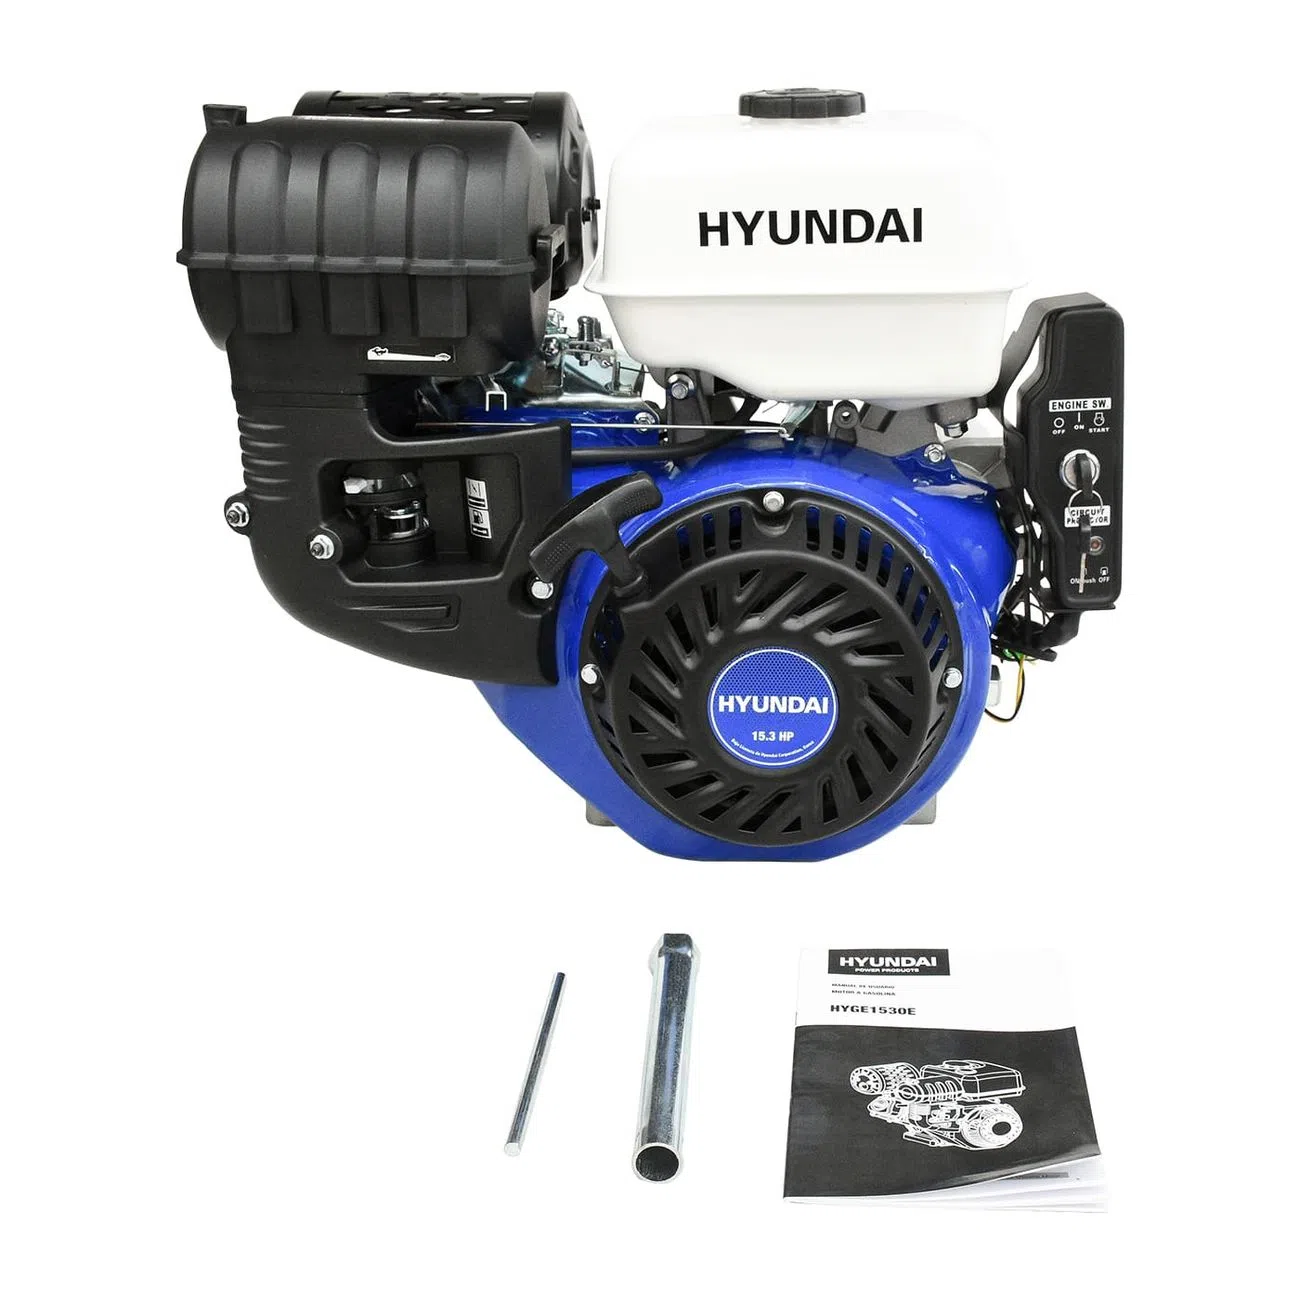 GENERADOR INVERTER HYUNDAI PORTATIL A GASOLINA 1000W/60HZ - HYE1250I -  Hyundai Power